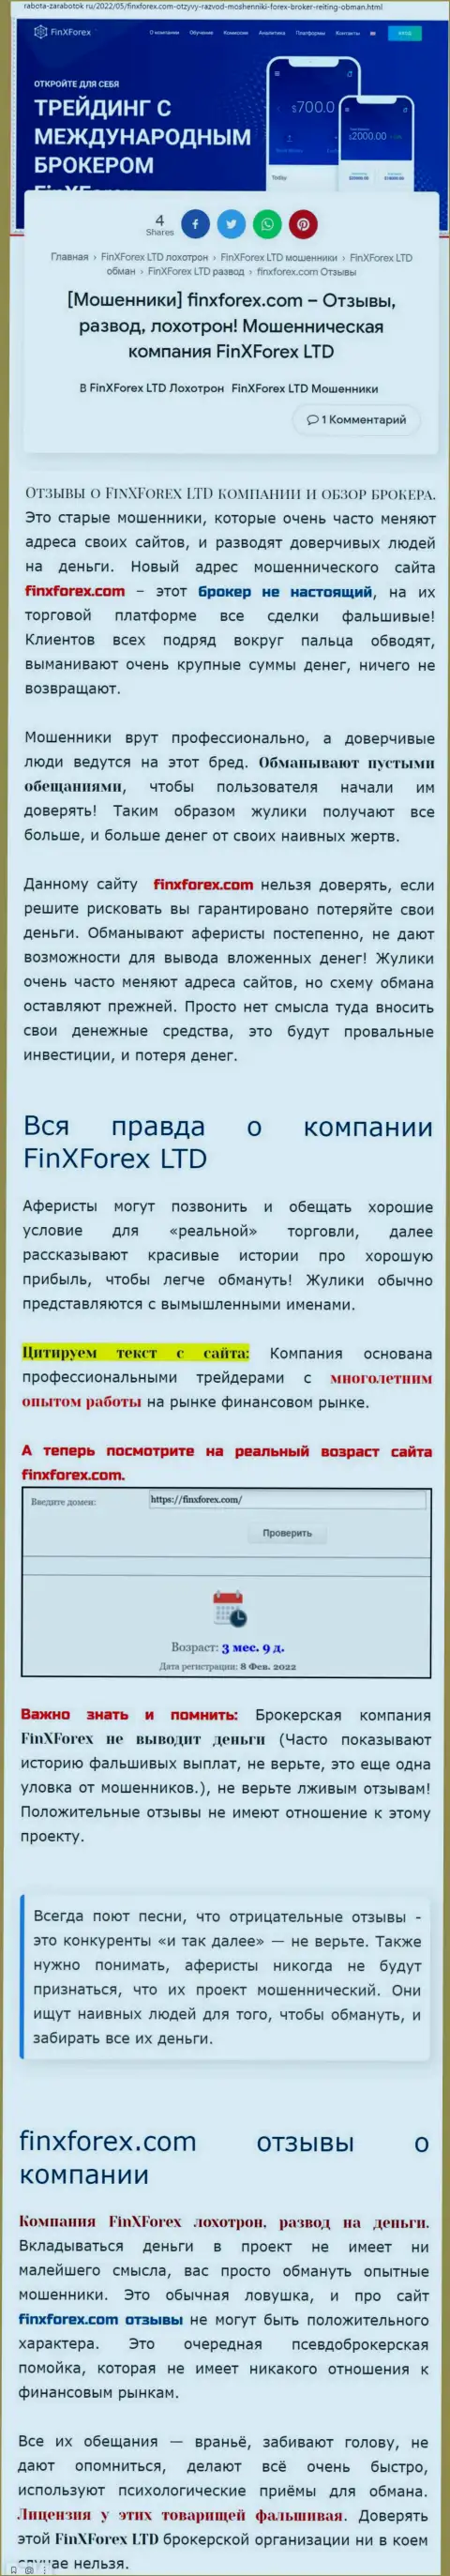 Автор обзора о ФинХФорекс говорит, что в организации FinXForex дурачат